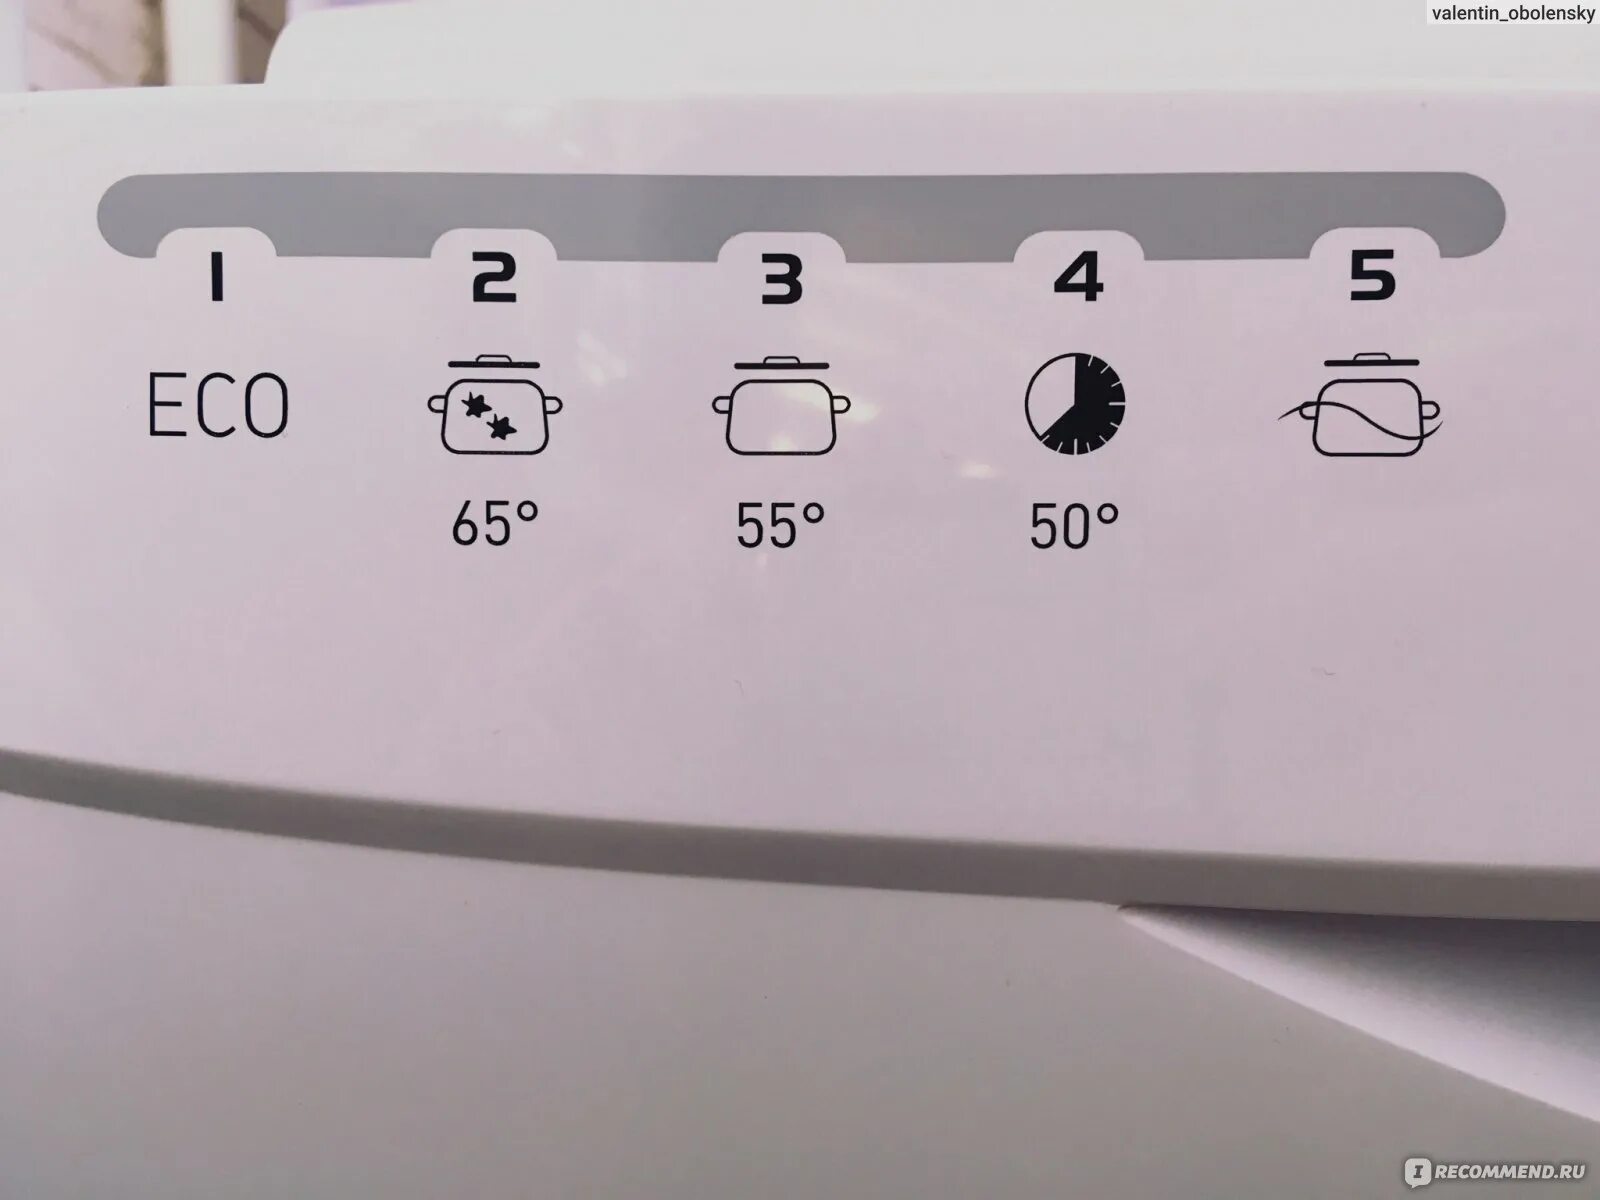 Посудомоечная машина индезит 0517. Посудомоечная машина Индезит индикаторы обозначения. Индезит 0517 посудомоечная индикаторы. Встраиваемая посудомоечная машина Индезит индикаторы обозначения. Индикаторы на посудомоечной машине Индезит.